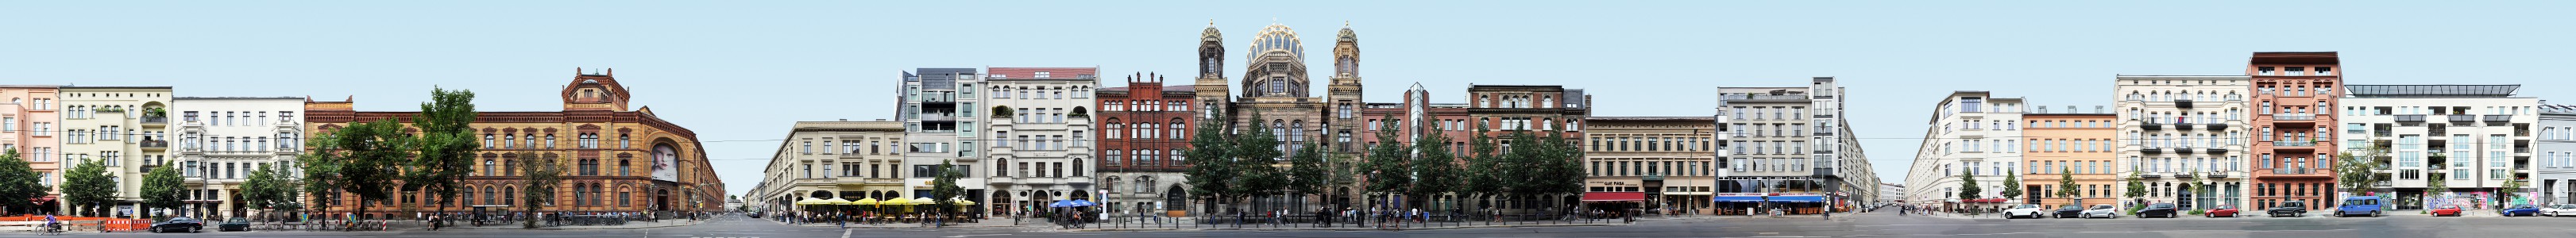 Neue Synagoge | Oranienburger Strasse